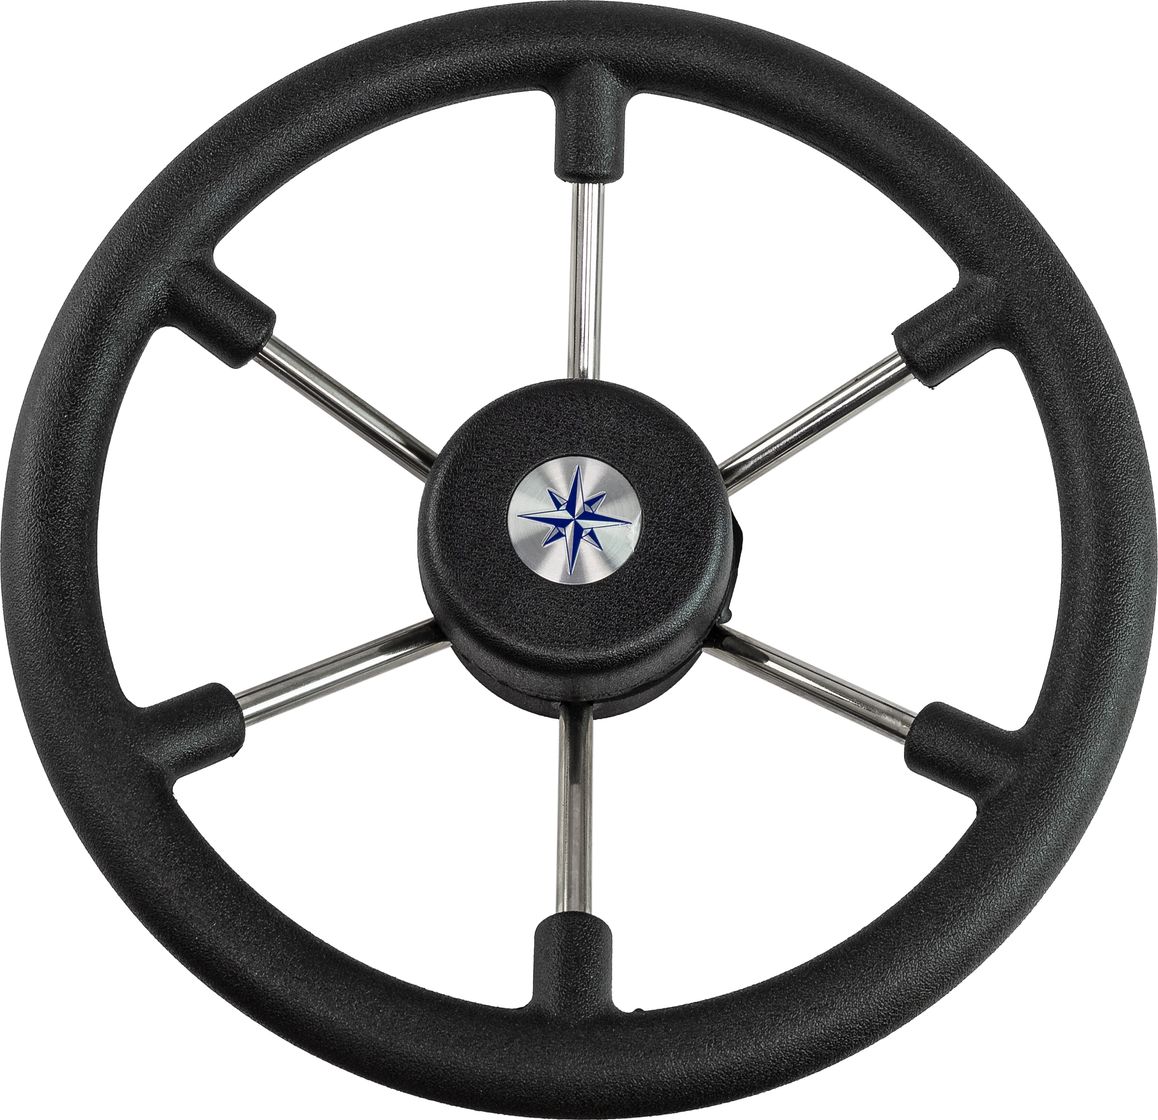 Рулевое колесо LEADER TANEGUM черный обод серебряные спицы д. 330 мм VN7330-01